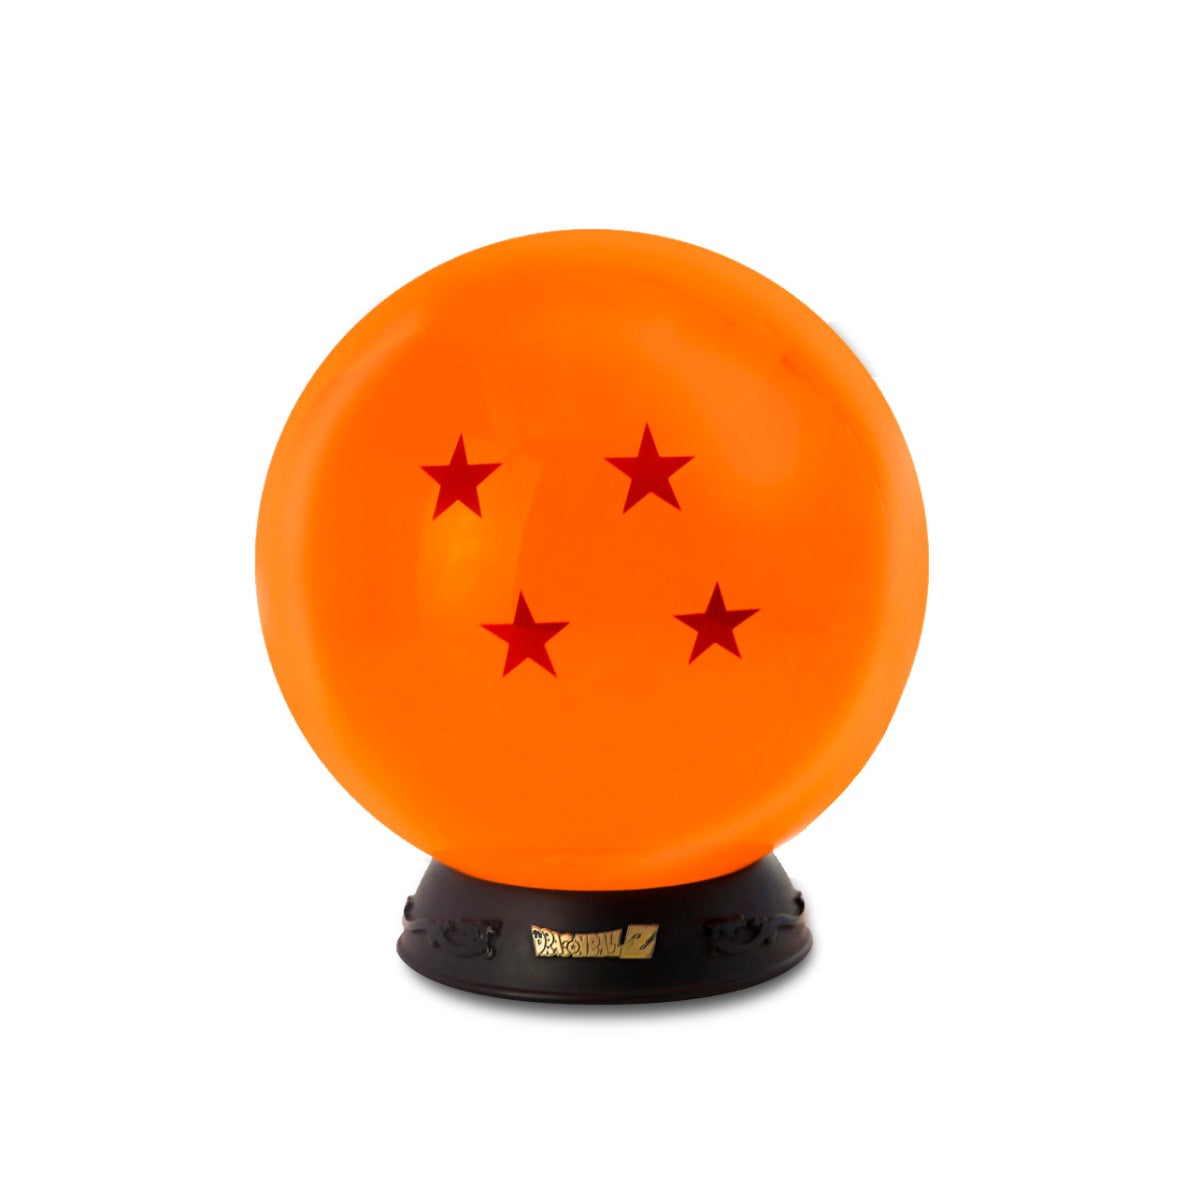 Becks partido Democrático compuesto Dragon Ball Z - Premium Collector's Lamp | Crunchyroll store